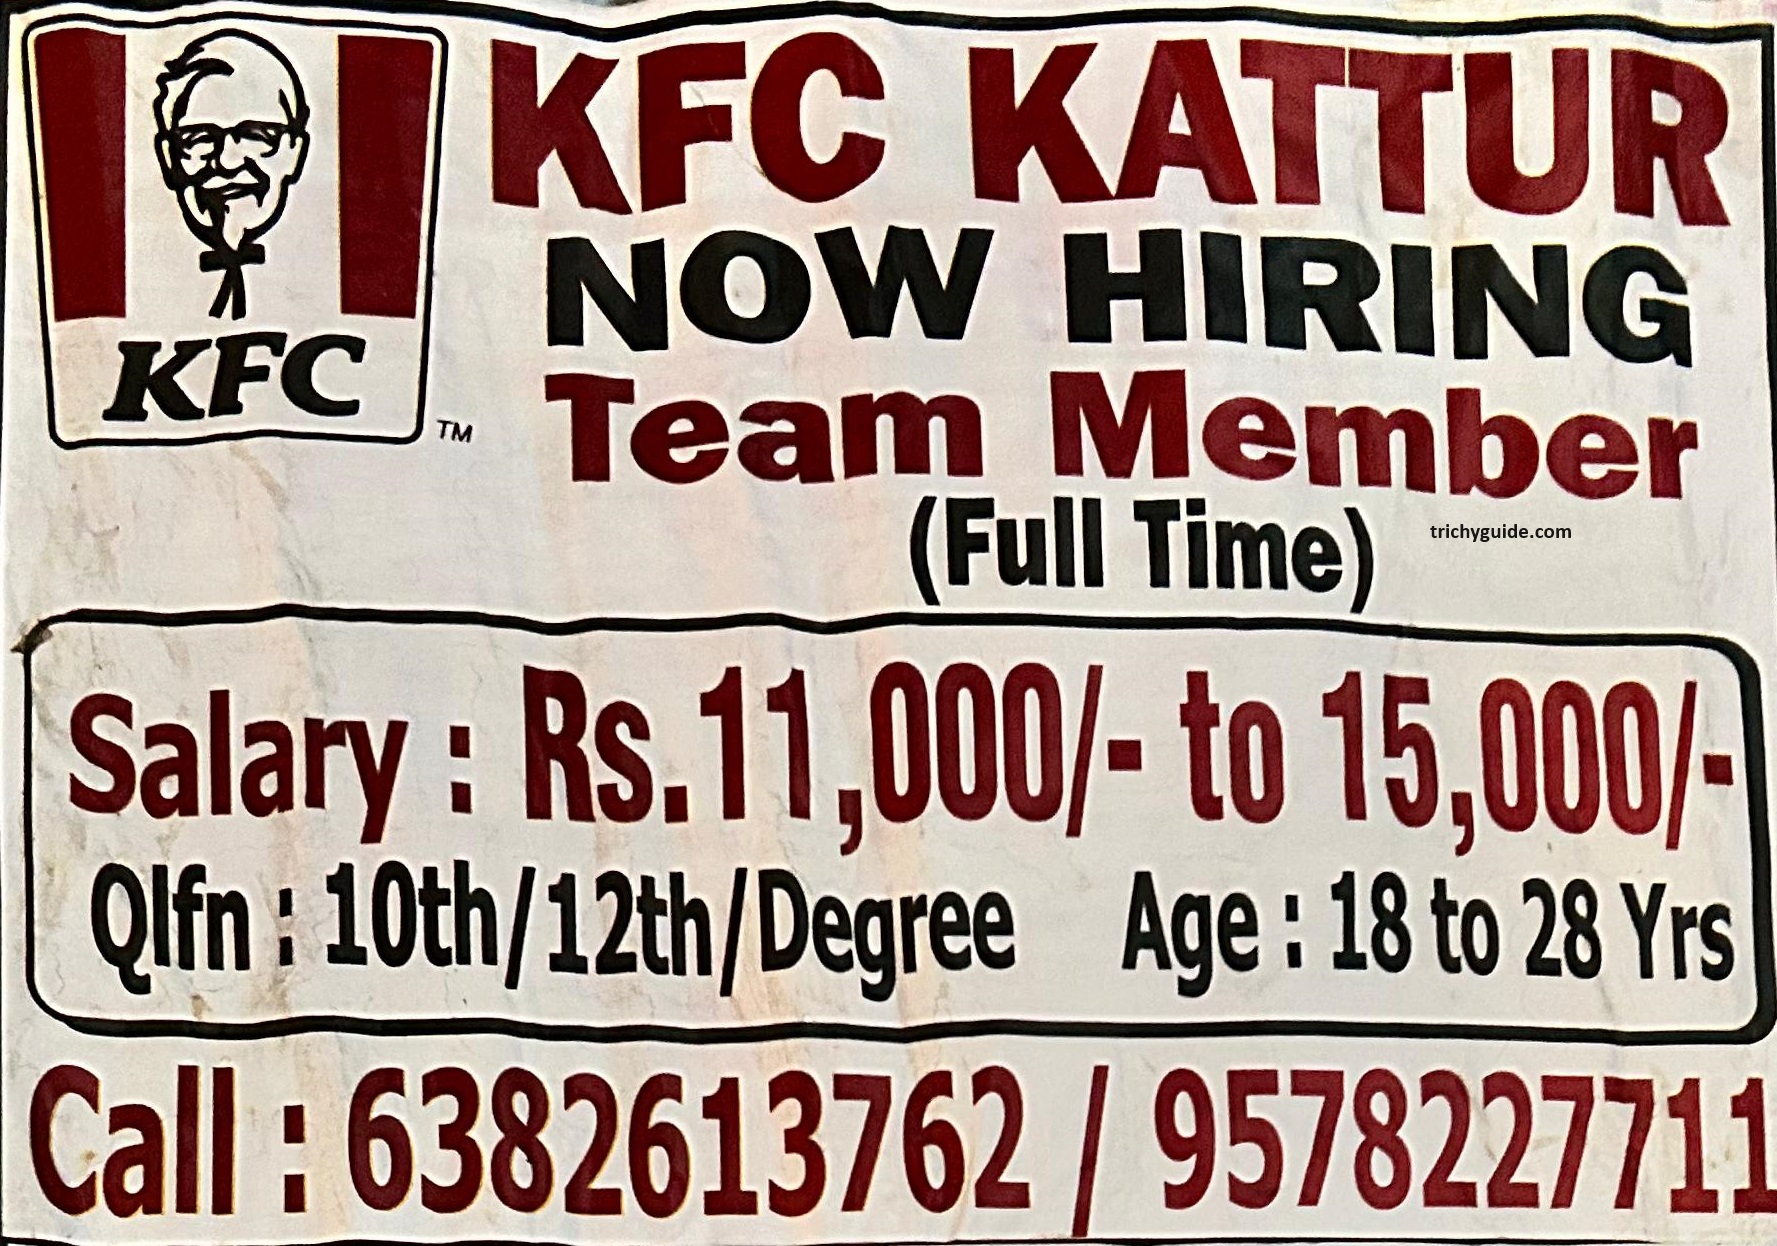 KFC Kattur Job vacancy